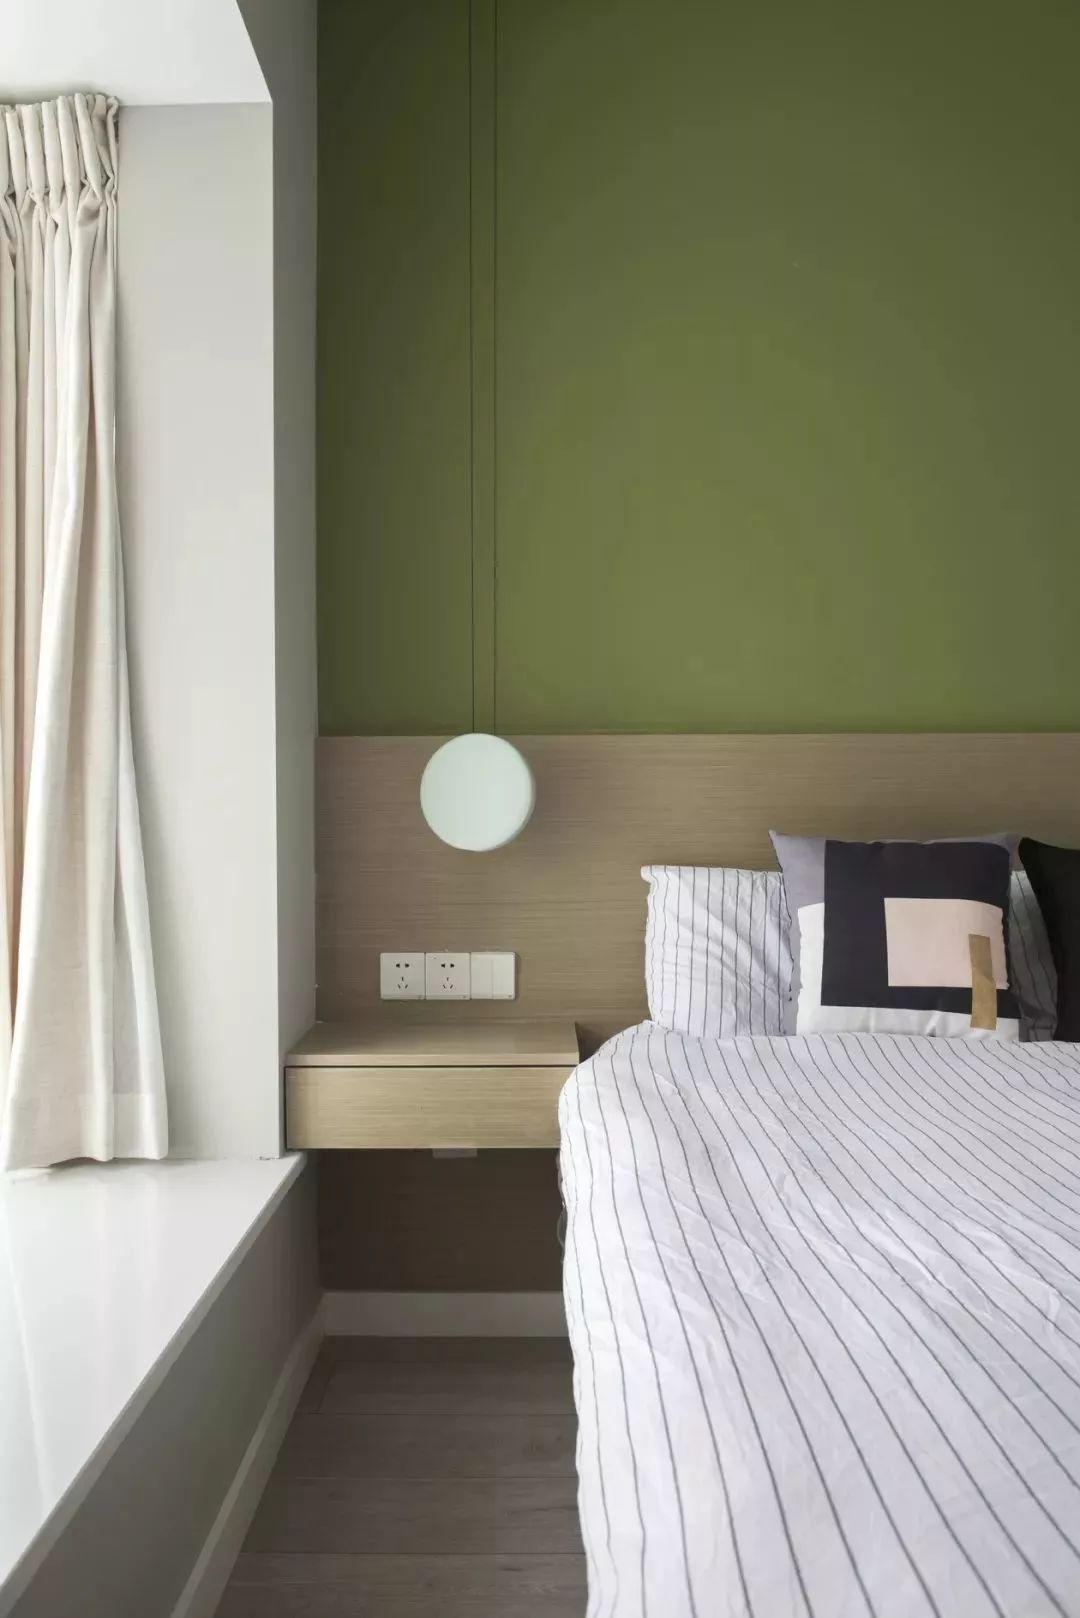 茶绿色的墙面,木色的护墙板,颜色非常饱和有质感.